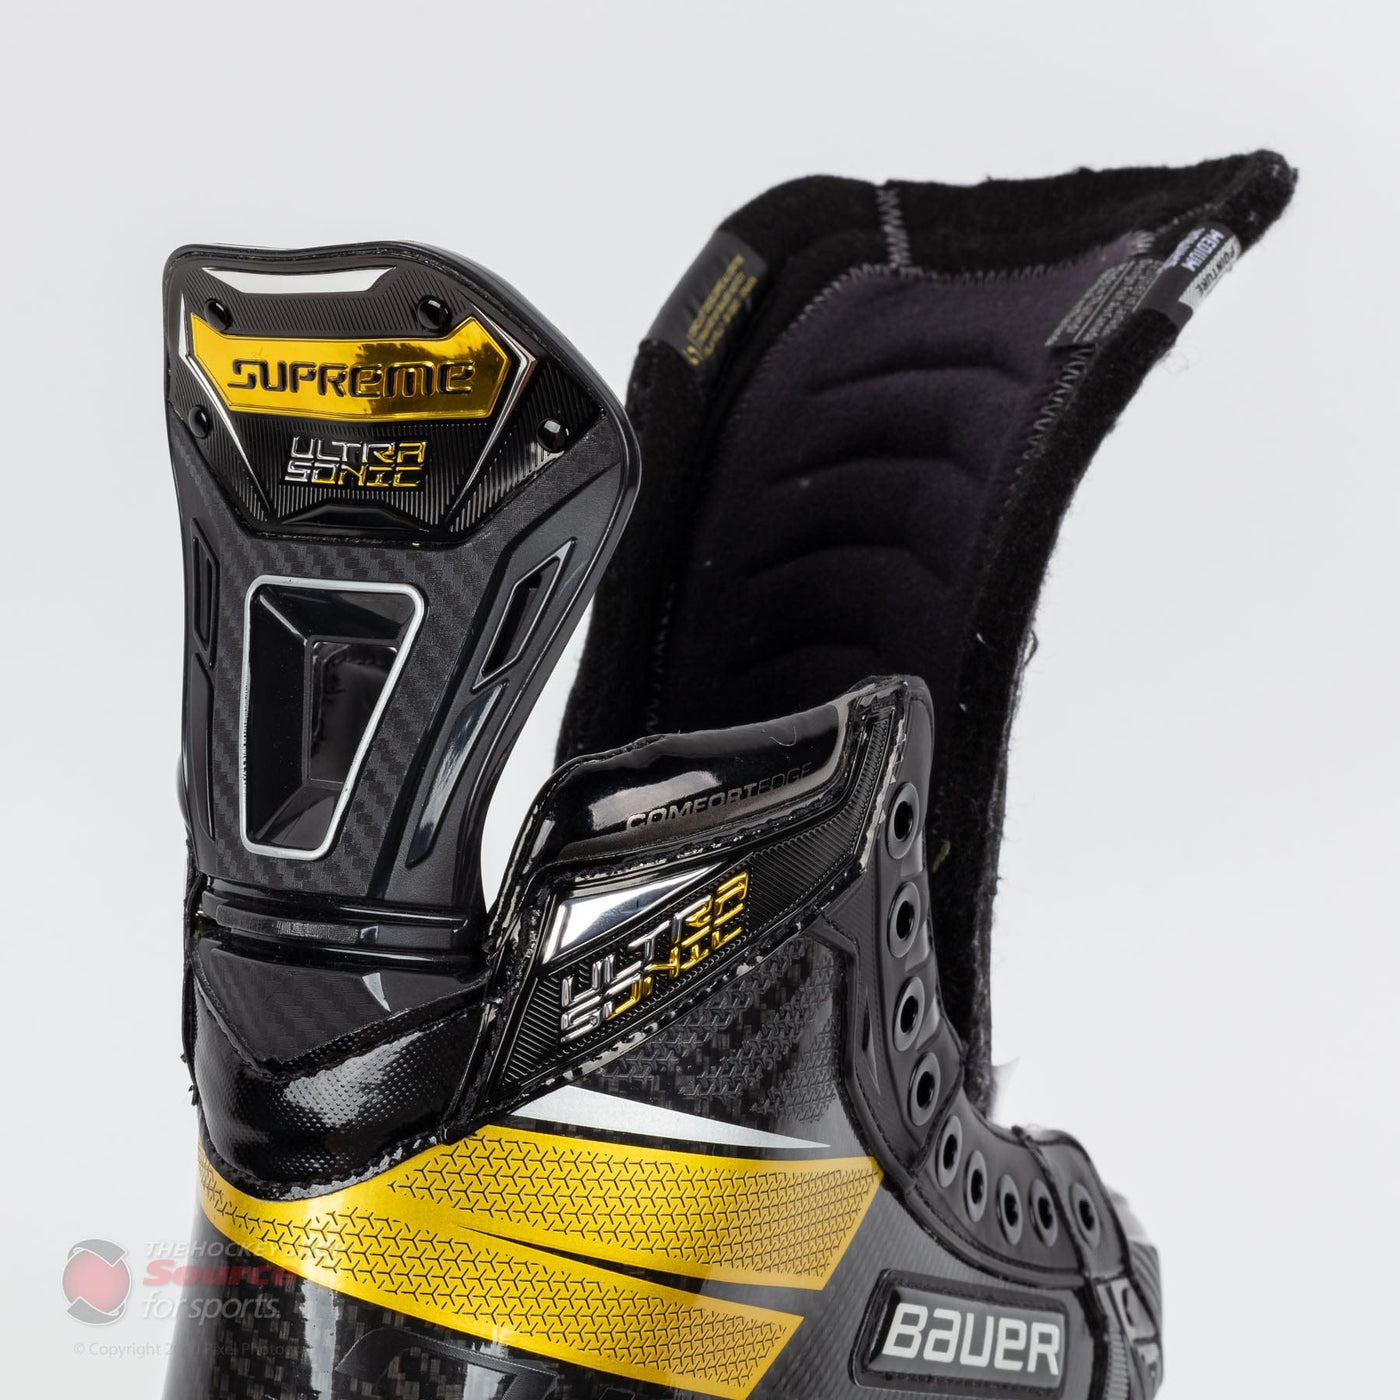 Bauer Supreme UltraSonic Senior Hockey Skates